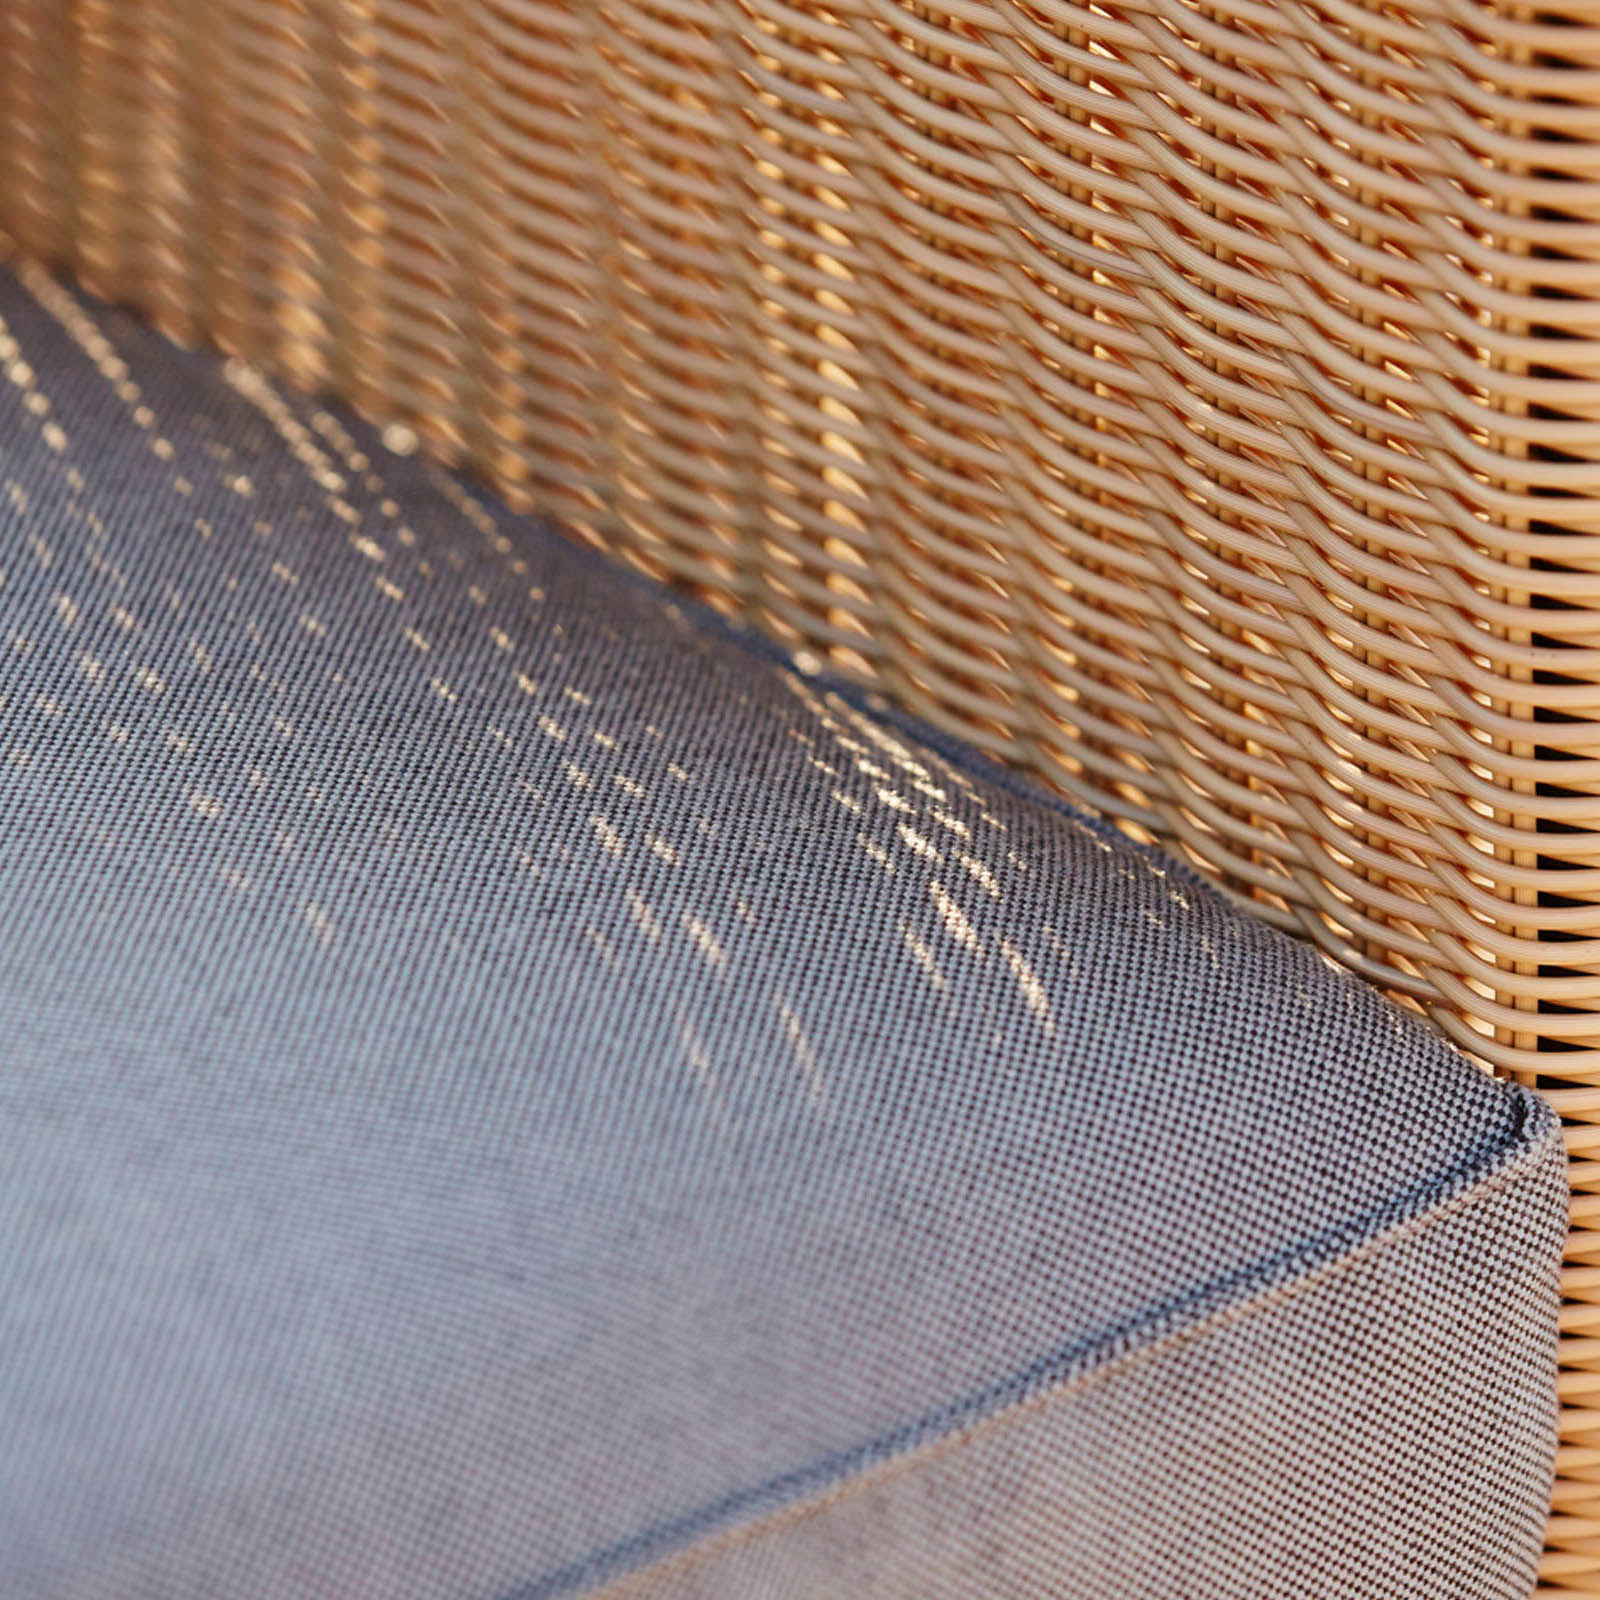 Chester 3-Sitzer Sofa aus Cane-line Weave in Natural mit Kissen aus Cane-line Natté in Light Grey